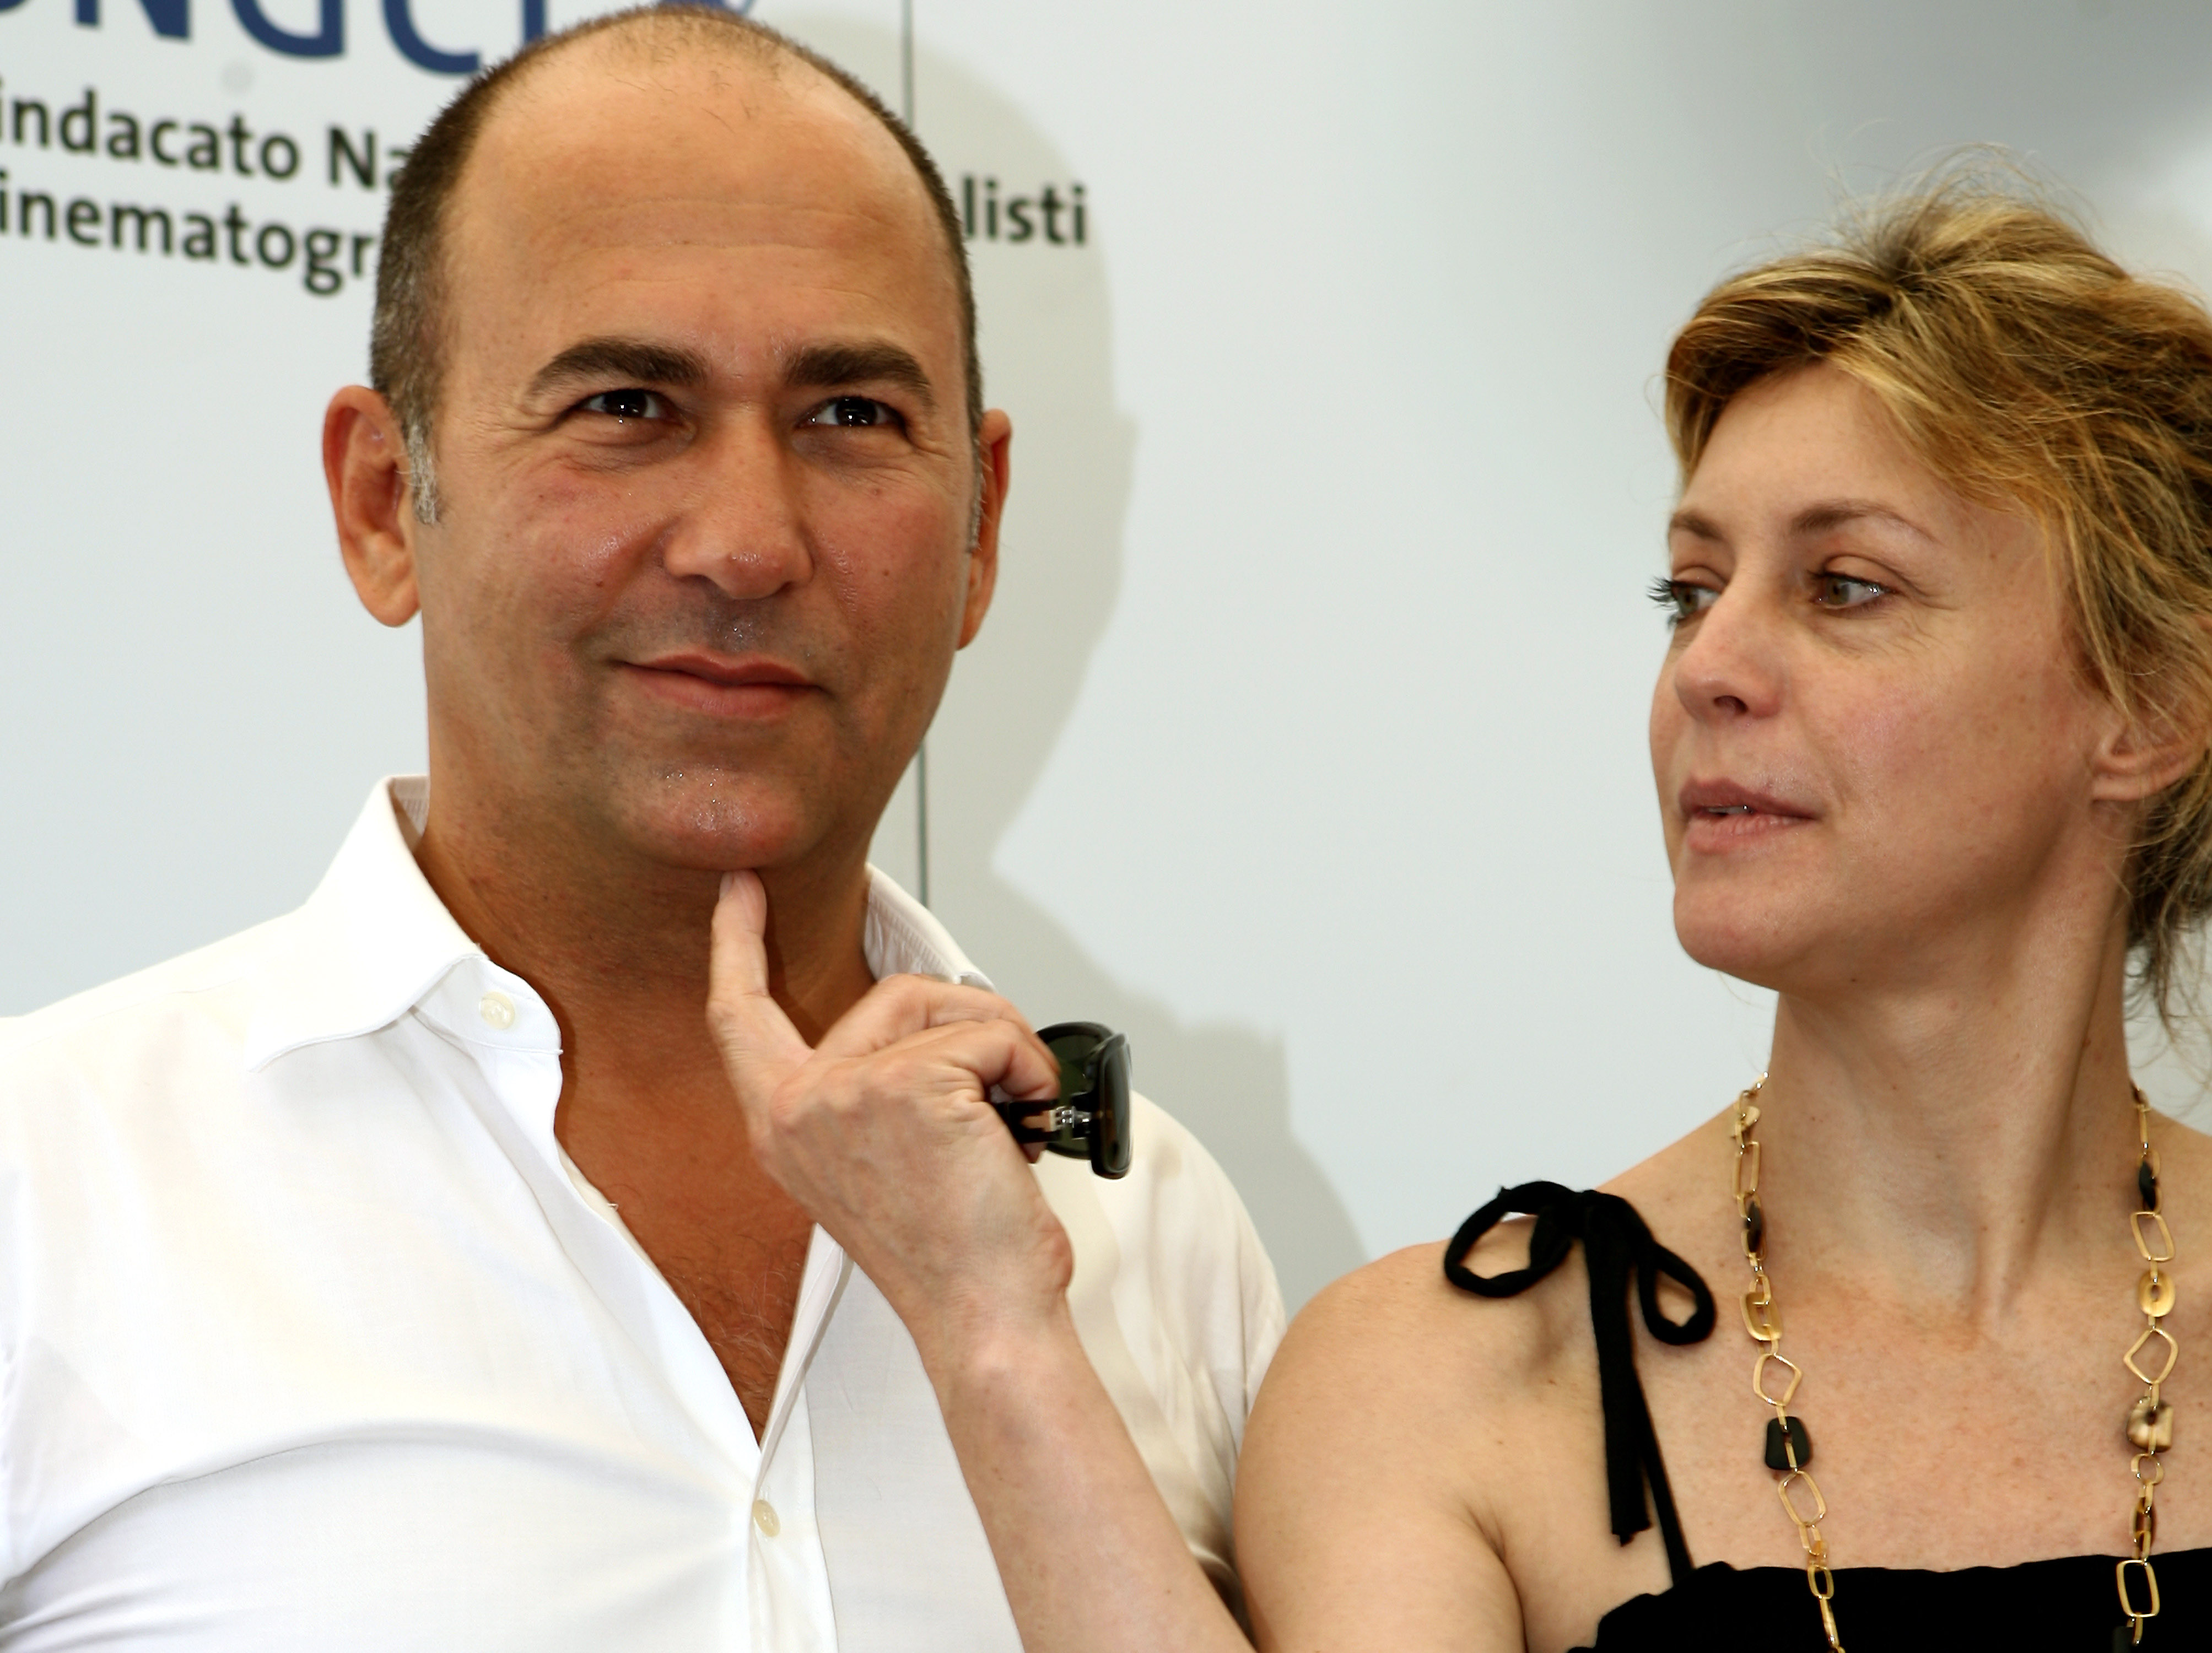 Nastri 2007: il regista Ferzan Ozpetek e Margherita Buy, Miglior attrice protagonista per "Saturno contro"